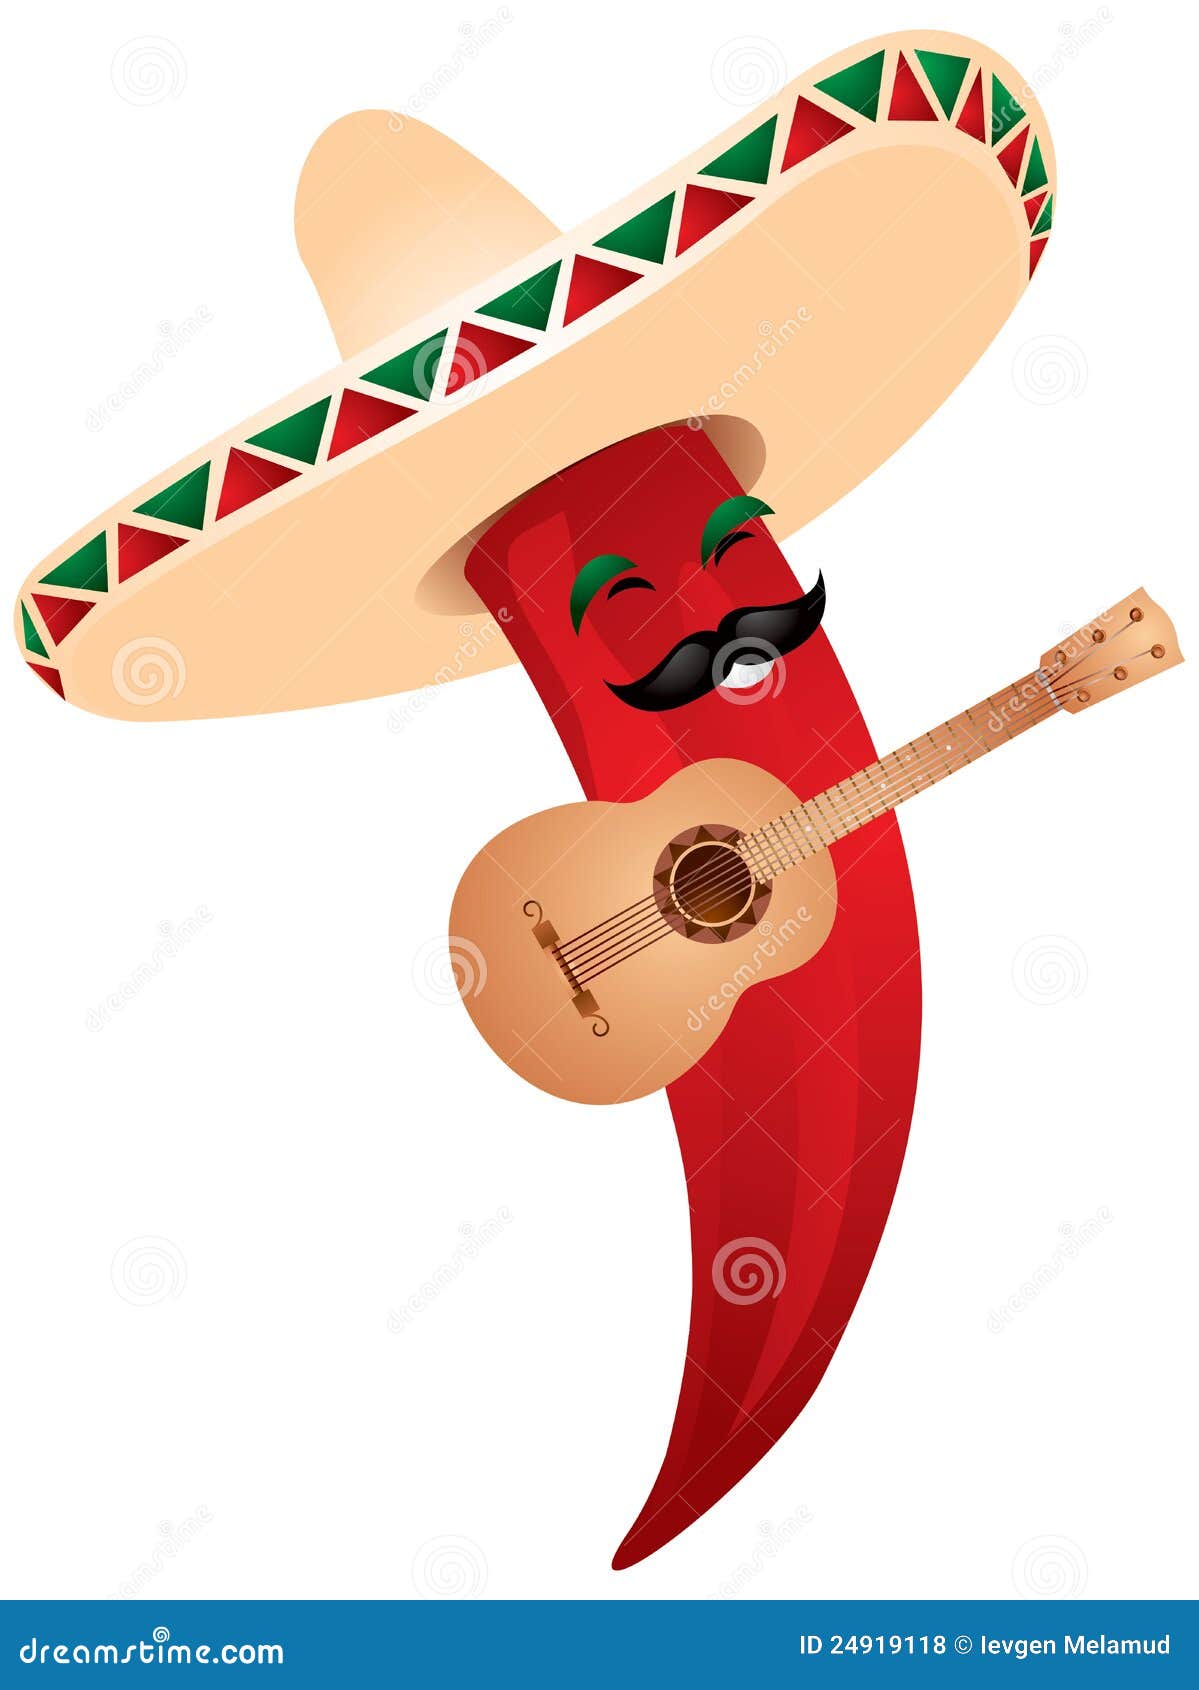 chili pepper in mexican sombrero